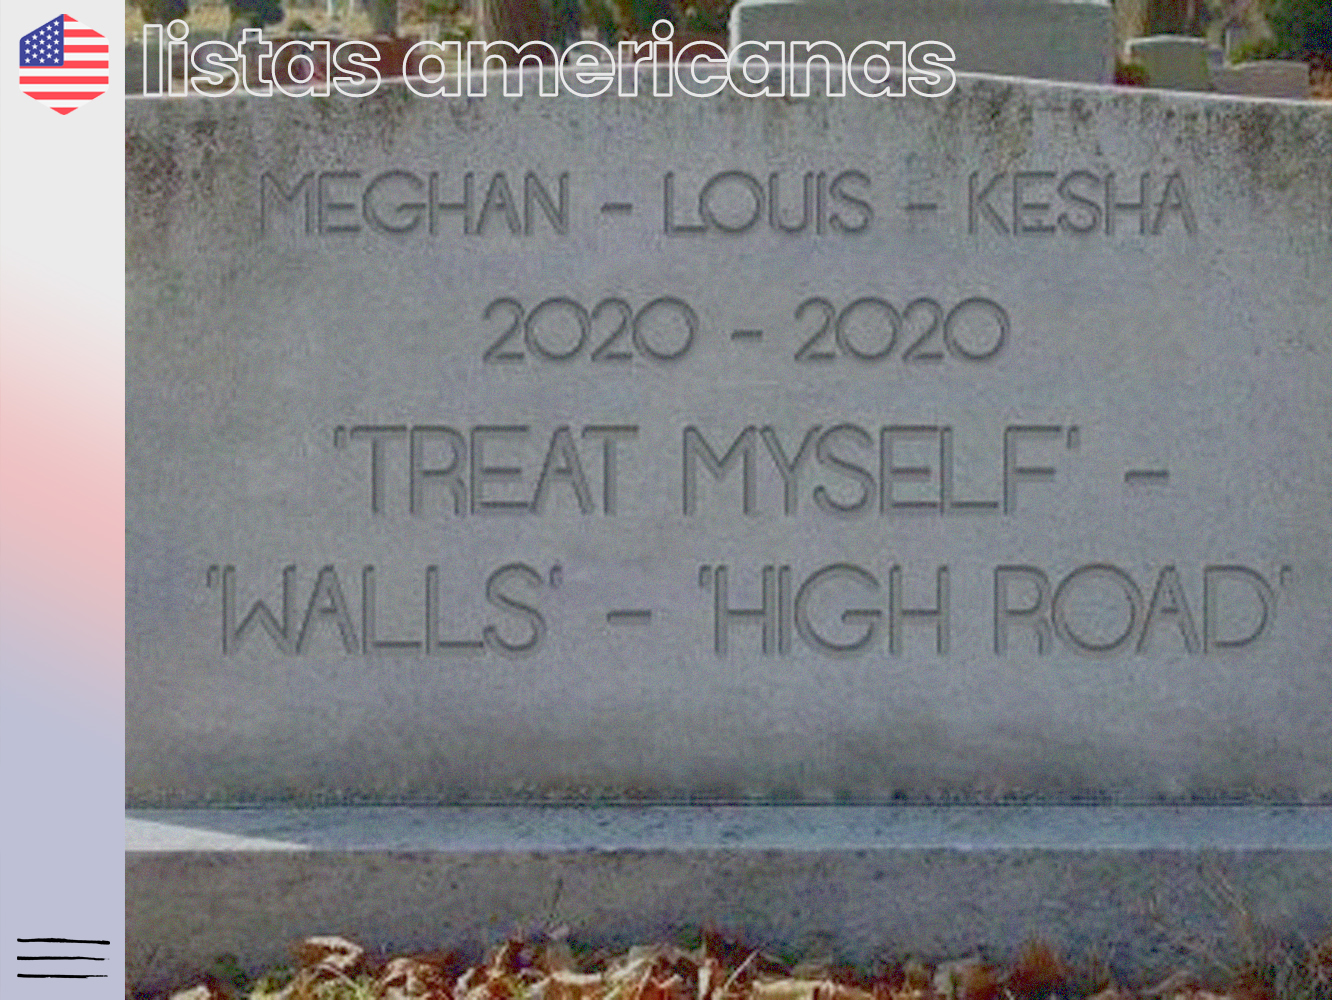  🇺🇸· La tragedia de la segunda semana es mayor en los casos de Meghan, Kesha y Louis